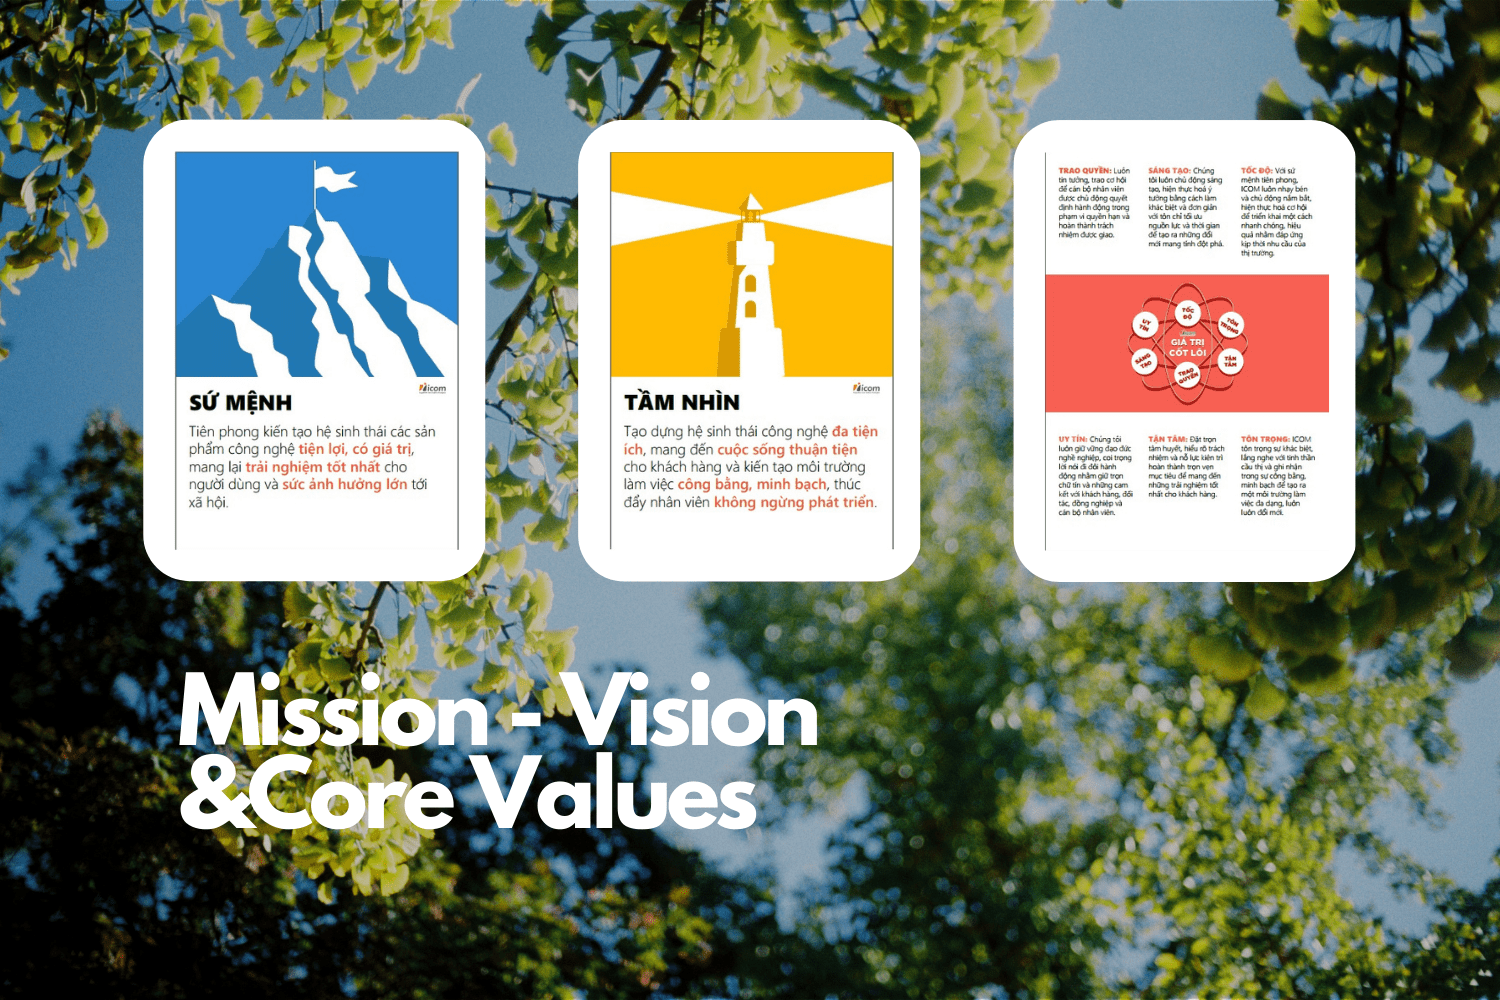 ICOM ANNOUNCES ITS MISSION - VISION - CORE VALUES.